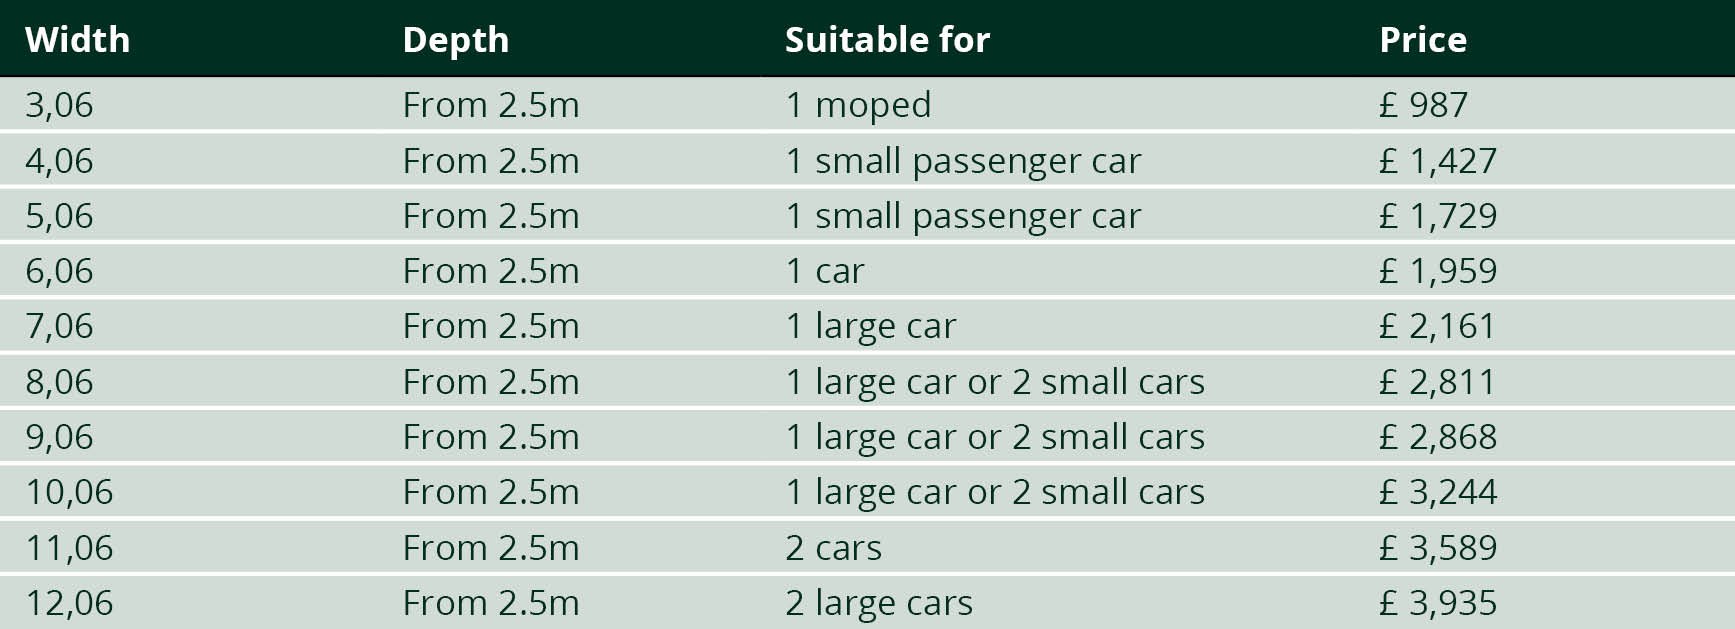 Carport costs